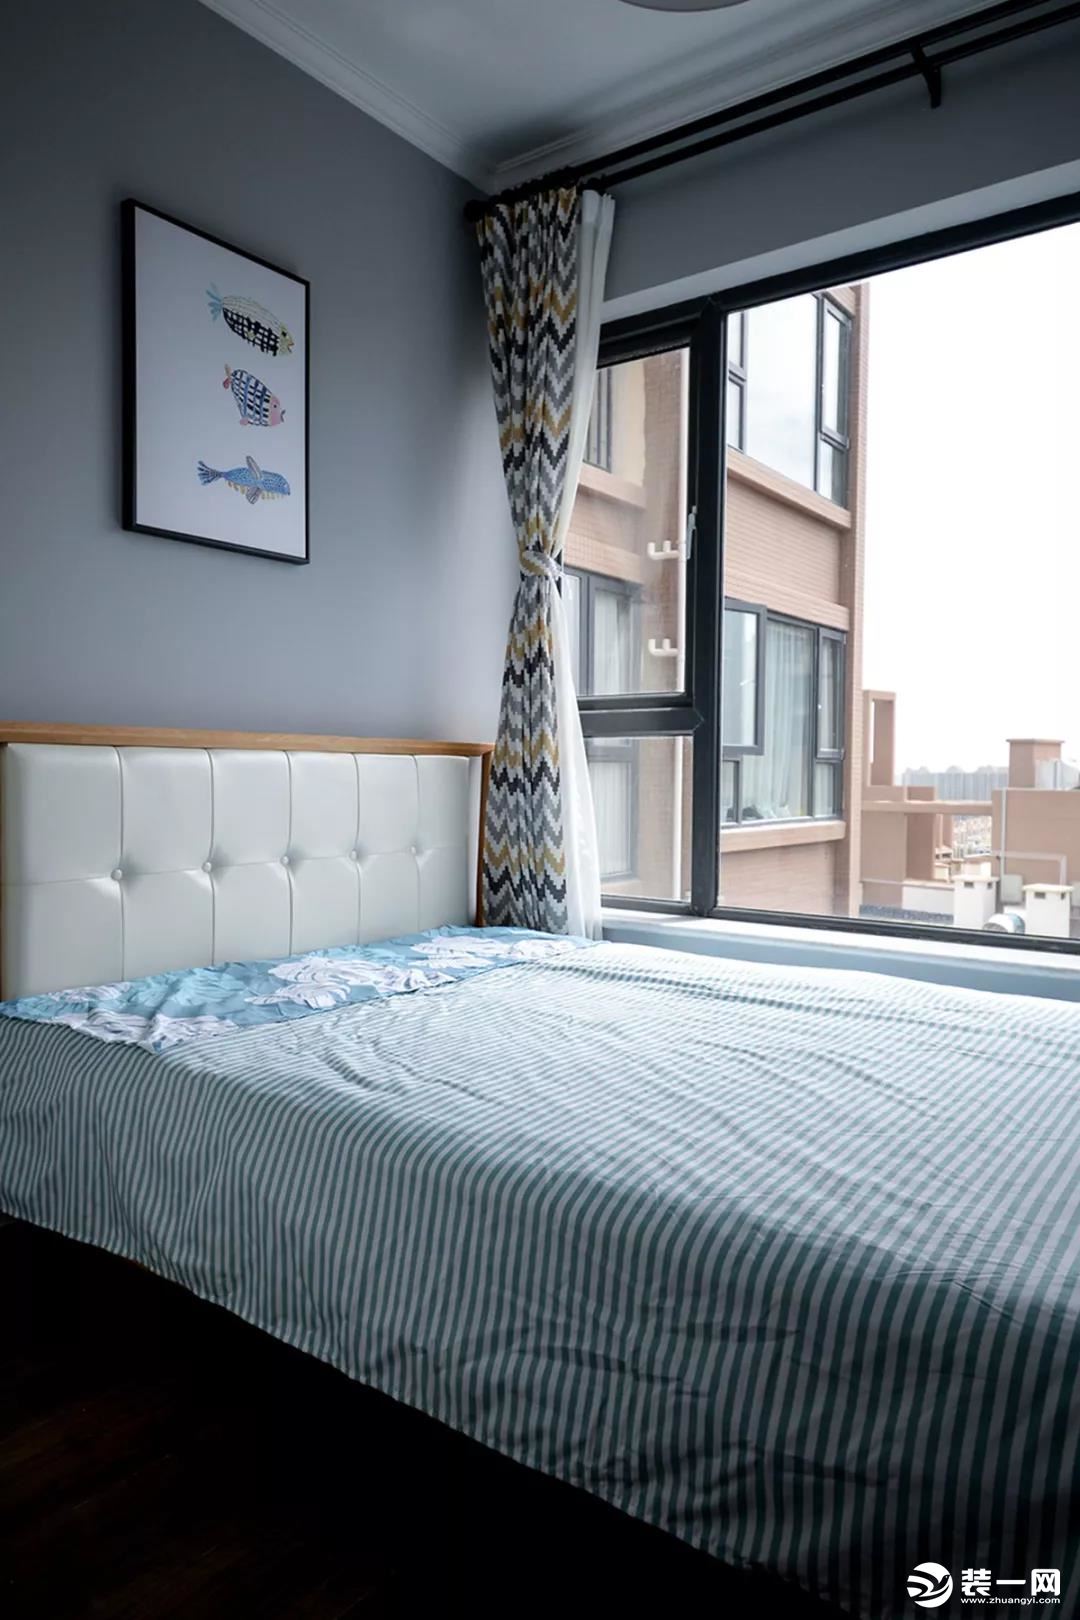 次卧在窗帘和床品上选择了更显宽敞的几何图形来装饰，让小空间看起来更加的宽敞一些